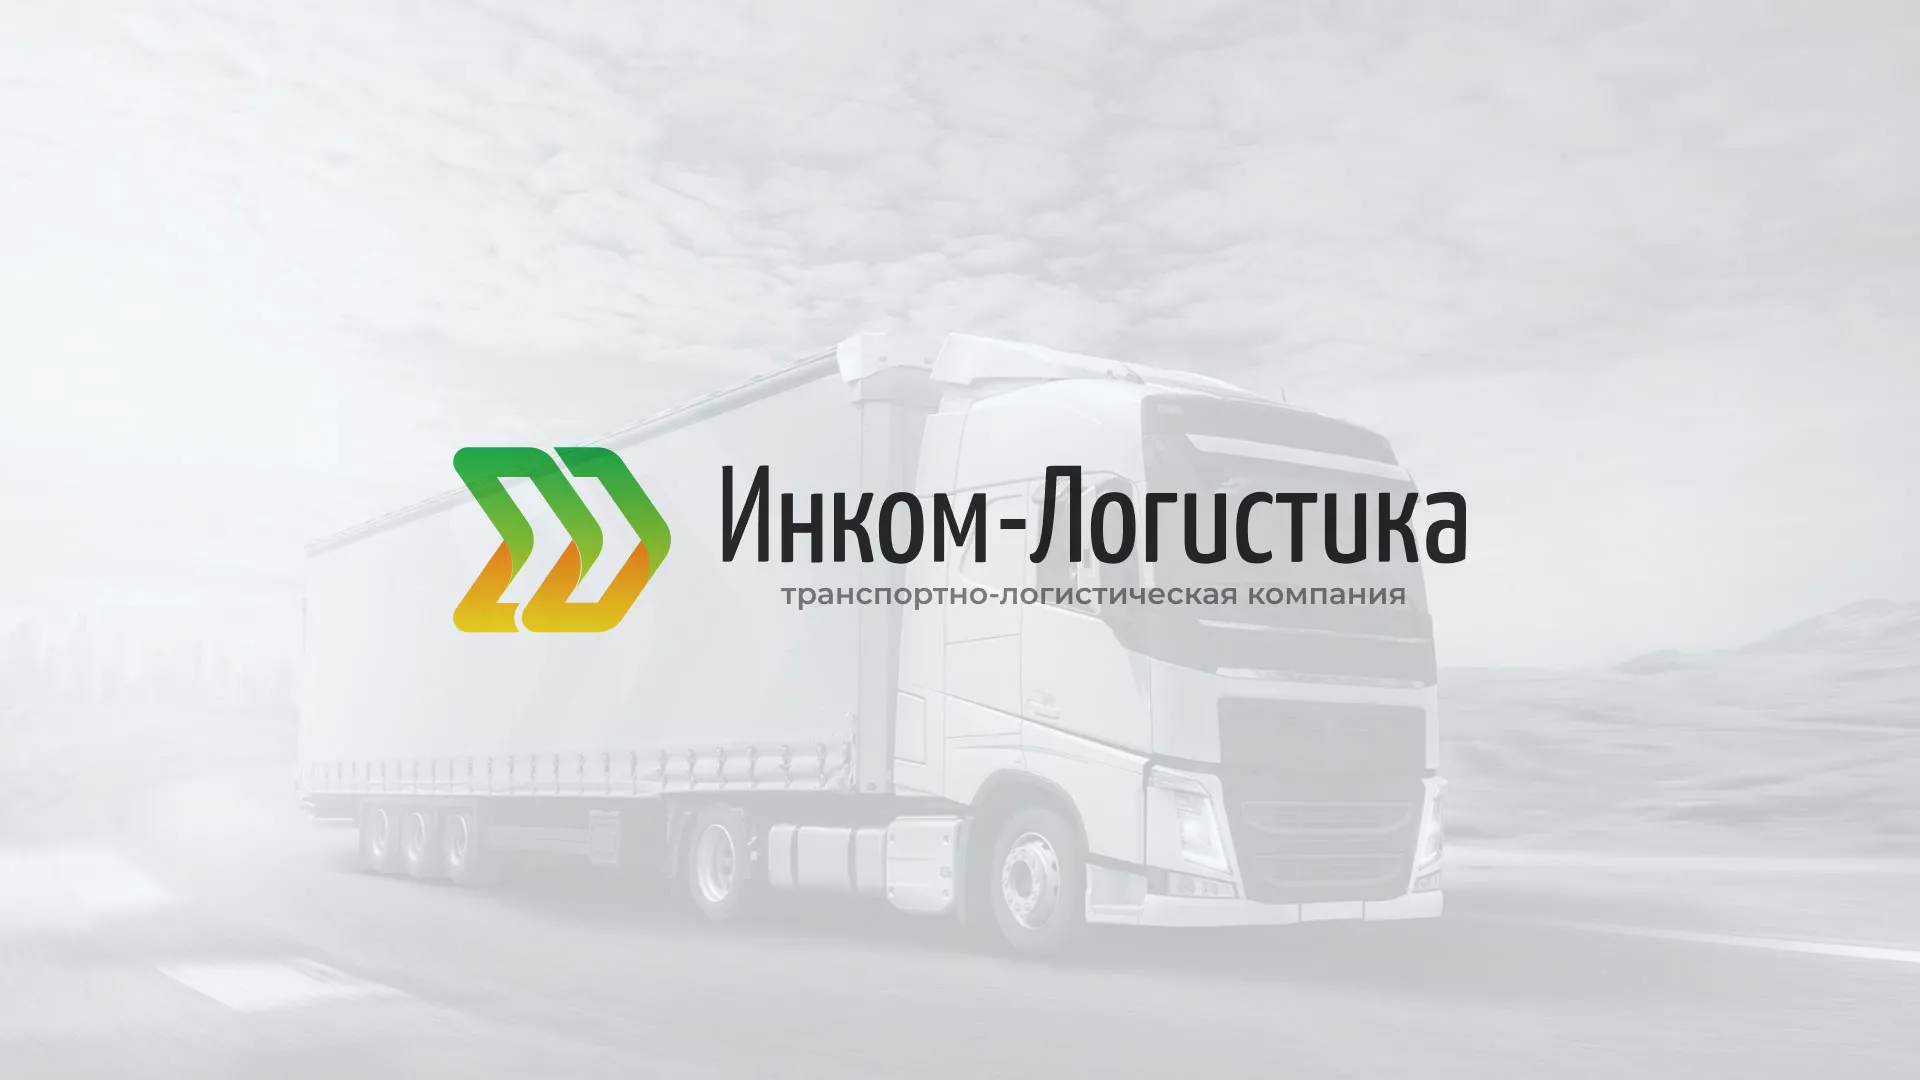 Разработка логотипа и сайта компании «Инком-Логистика» в Козьмодемьянске